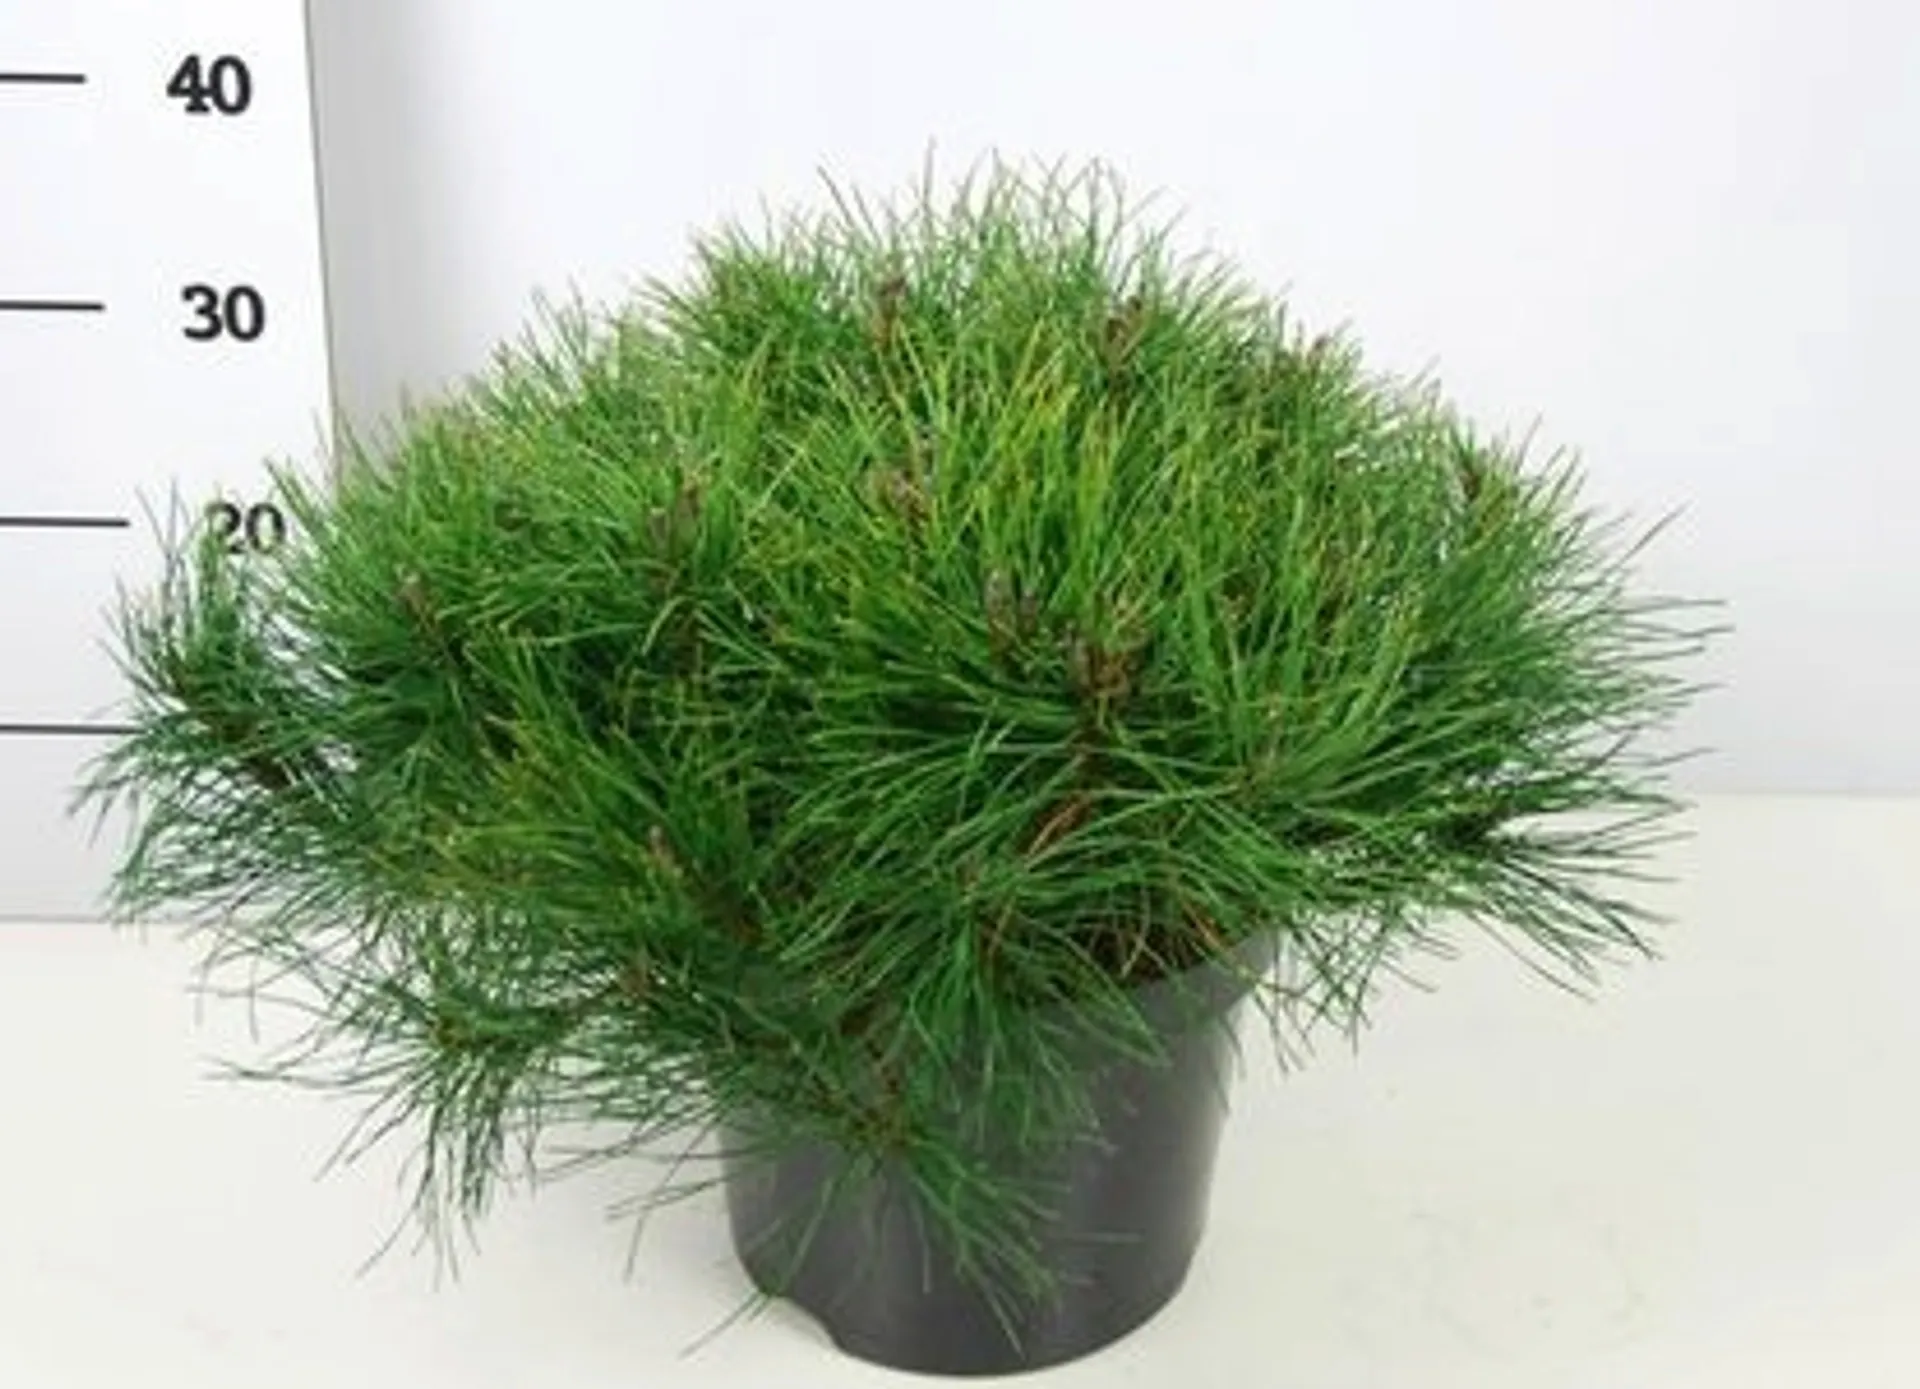 Vuorimänty 40-50 cm 7,5 l ruukussa. Astiataimi. Pinus mugo 'Mughus'